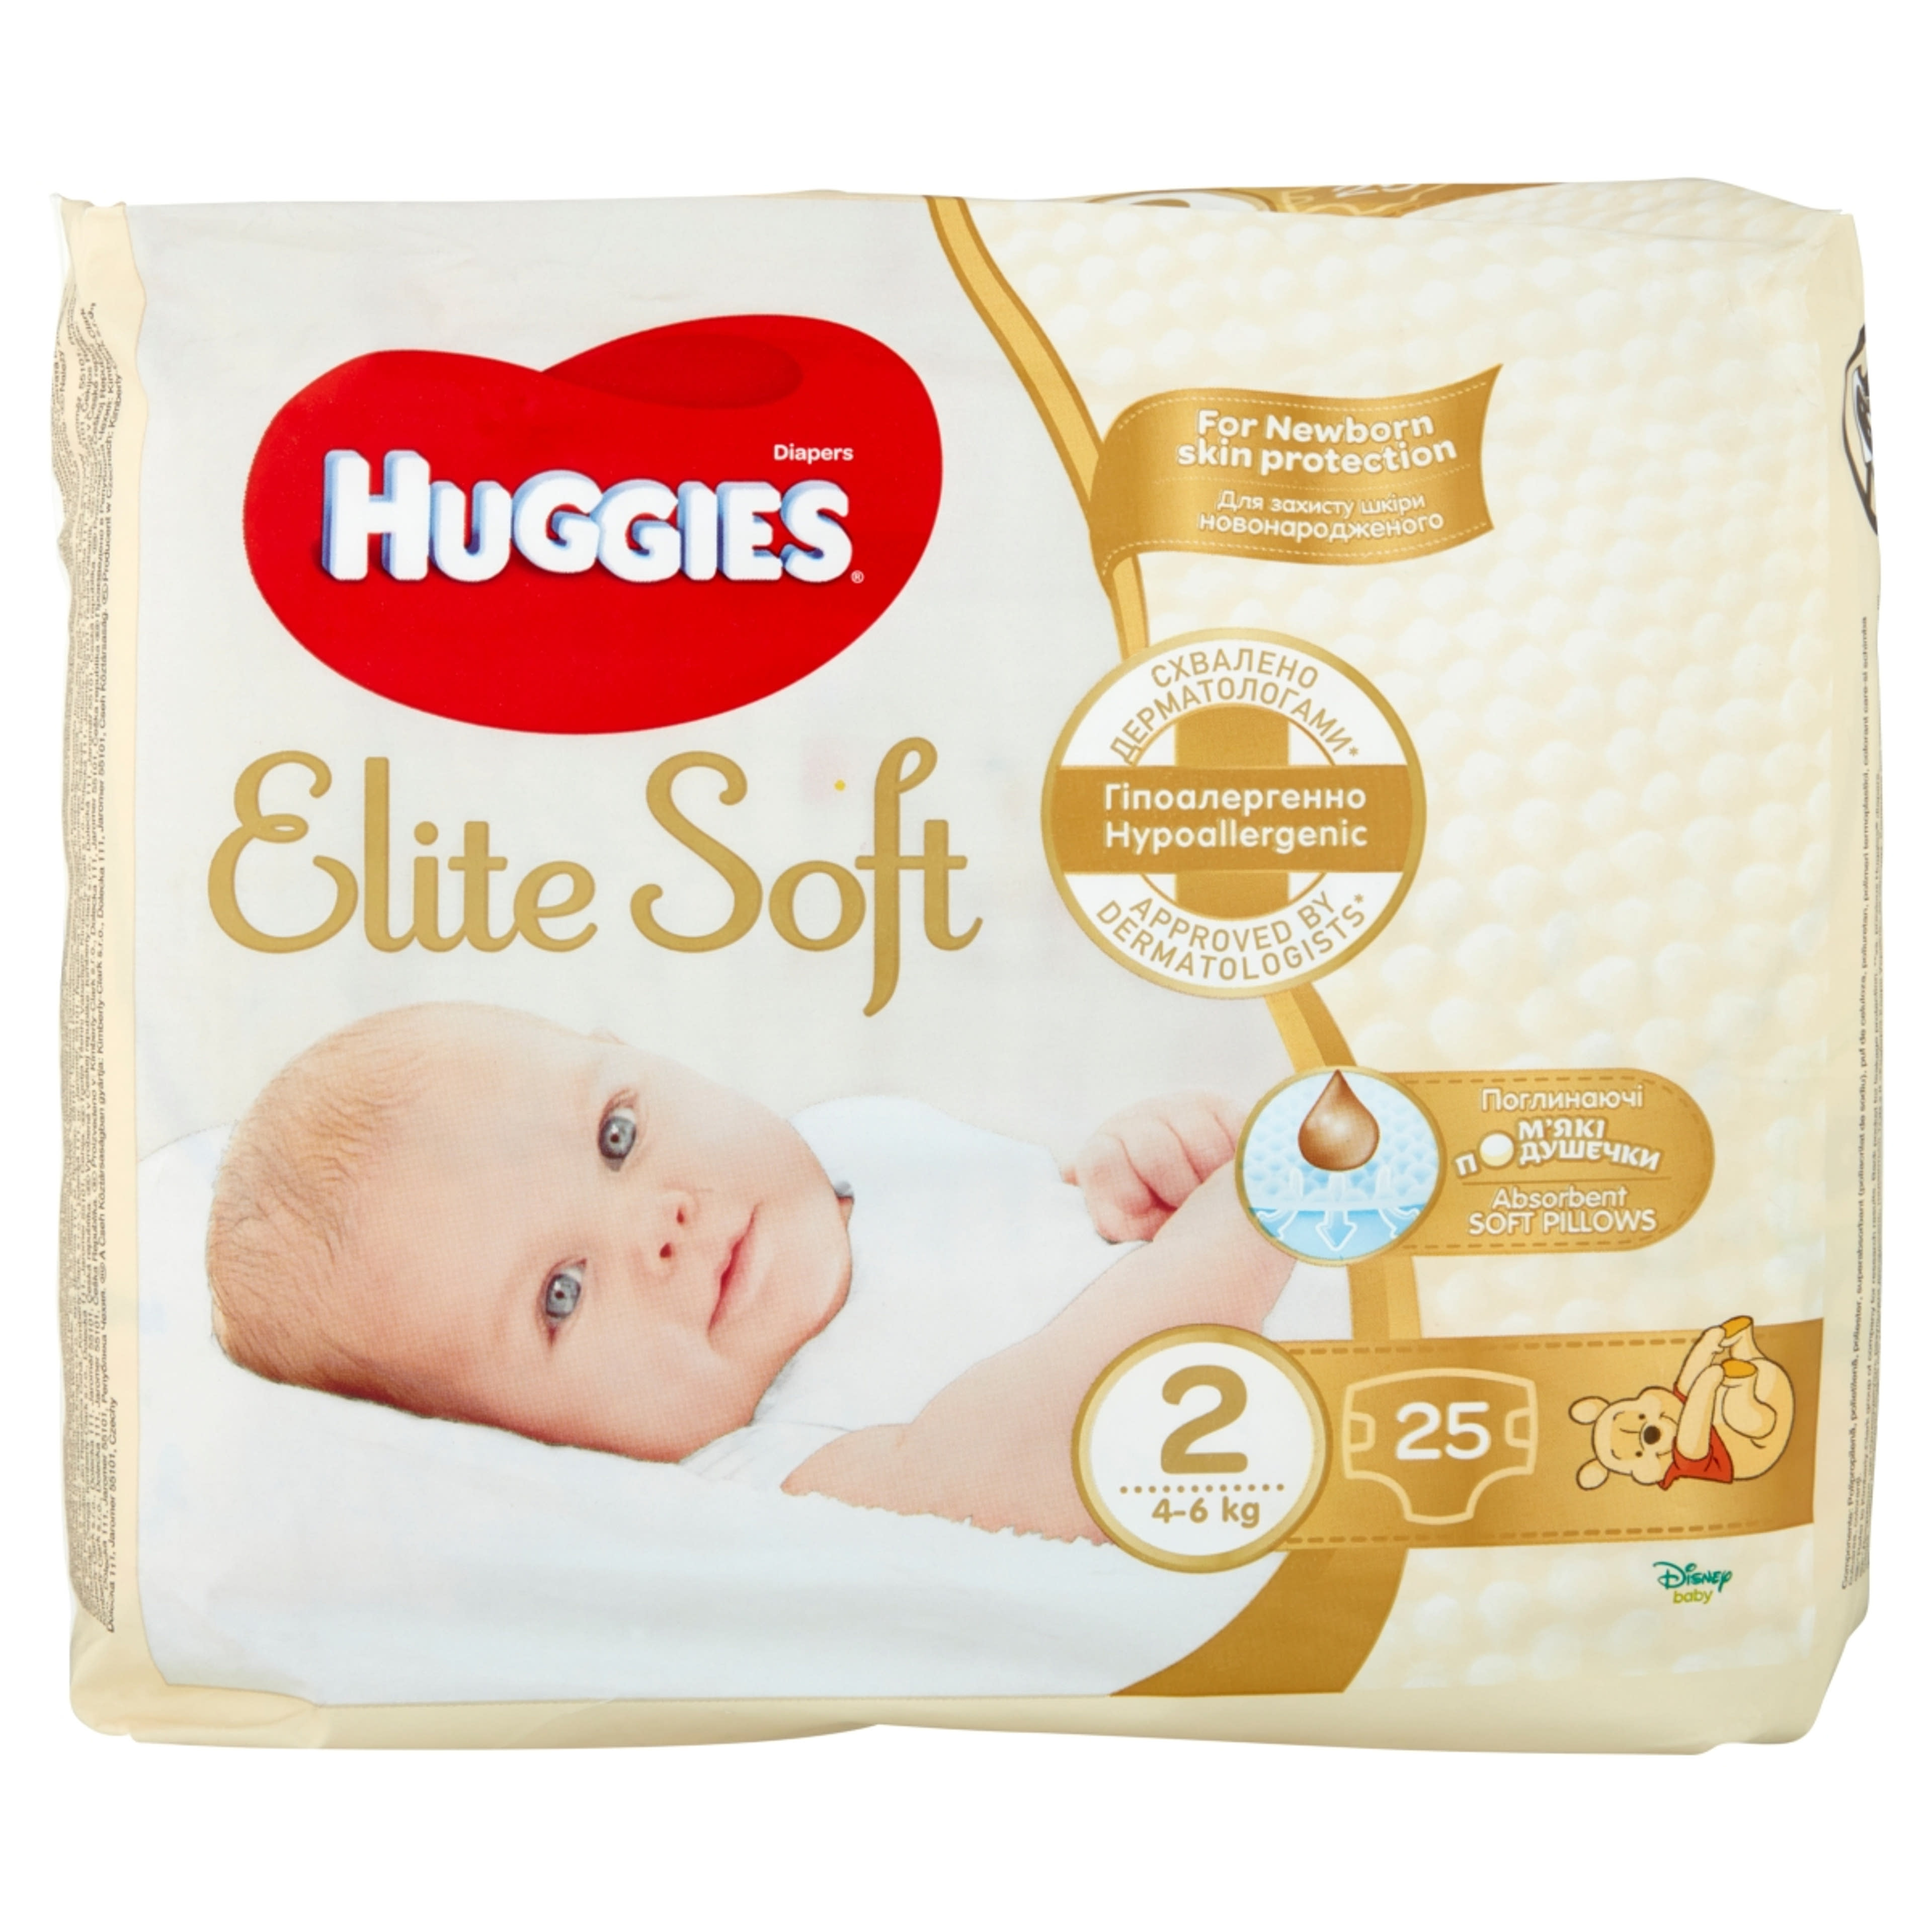 Huggies Elite Soft 2 újszülött nadrágpelenka 4-6 kg - 25 db